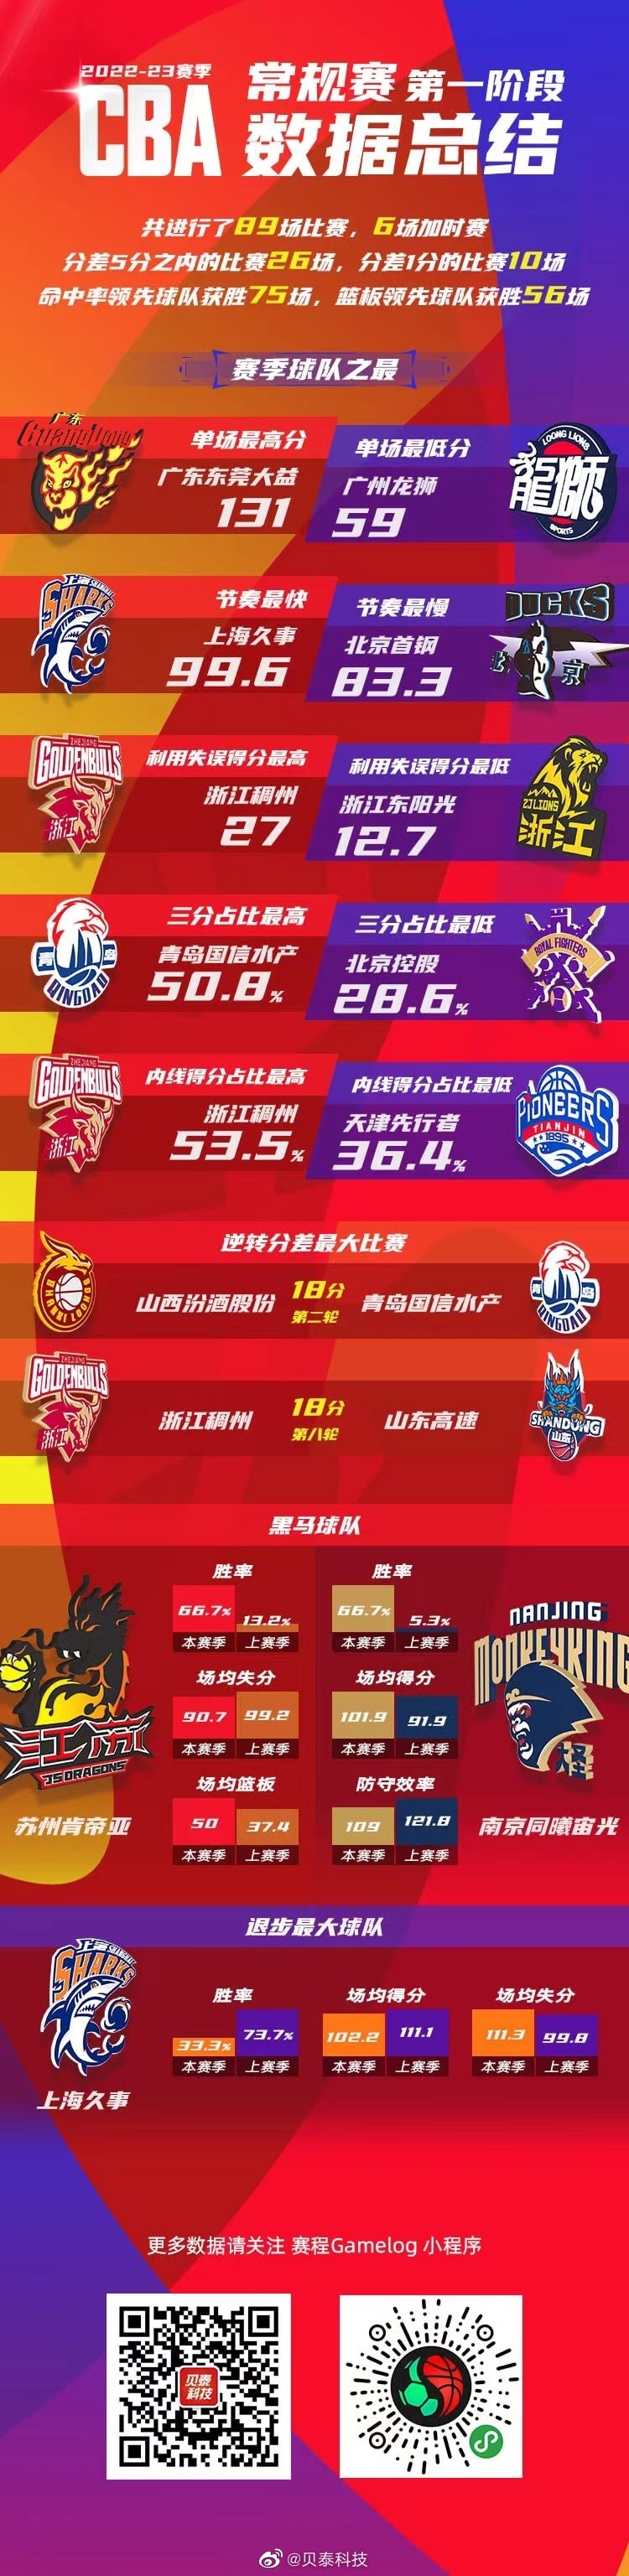 第一阶段球队数据总结:上海退步最大 江苏&同曦成最大黑马